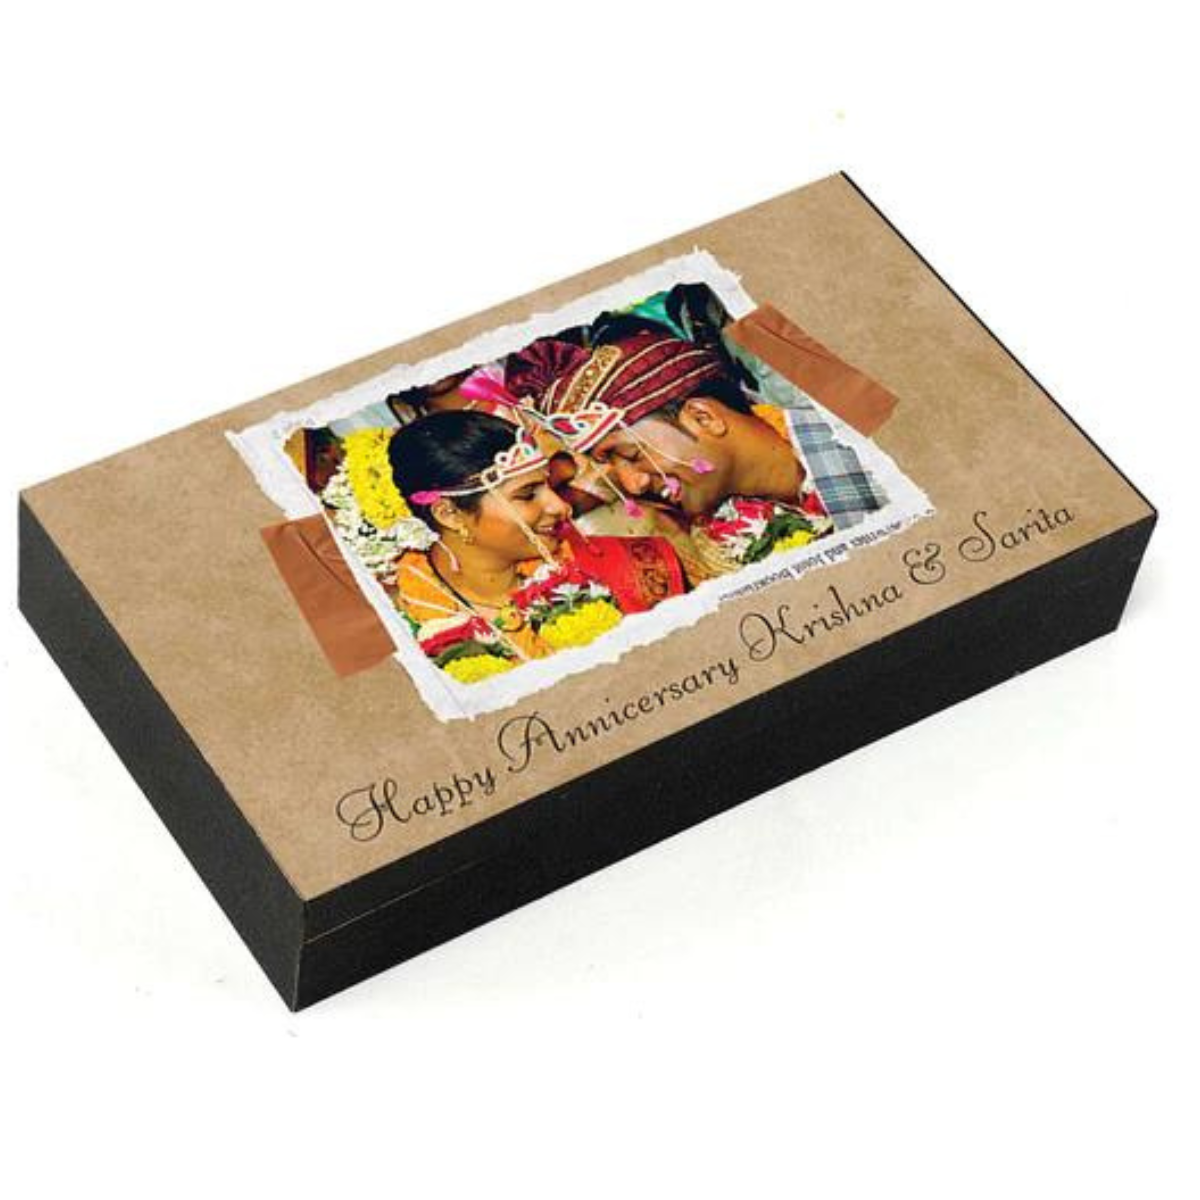 Buy Best Wedding Anniversary Personalised Photo Chocolate